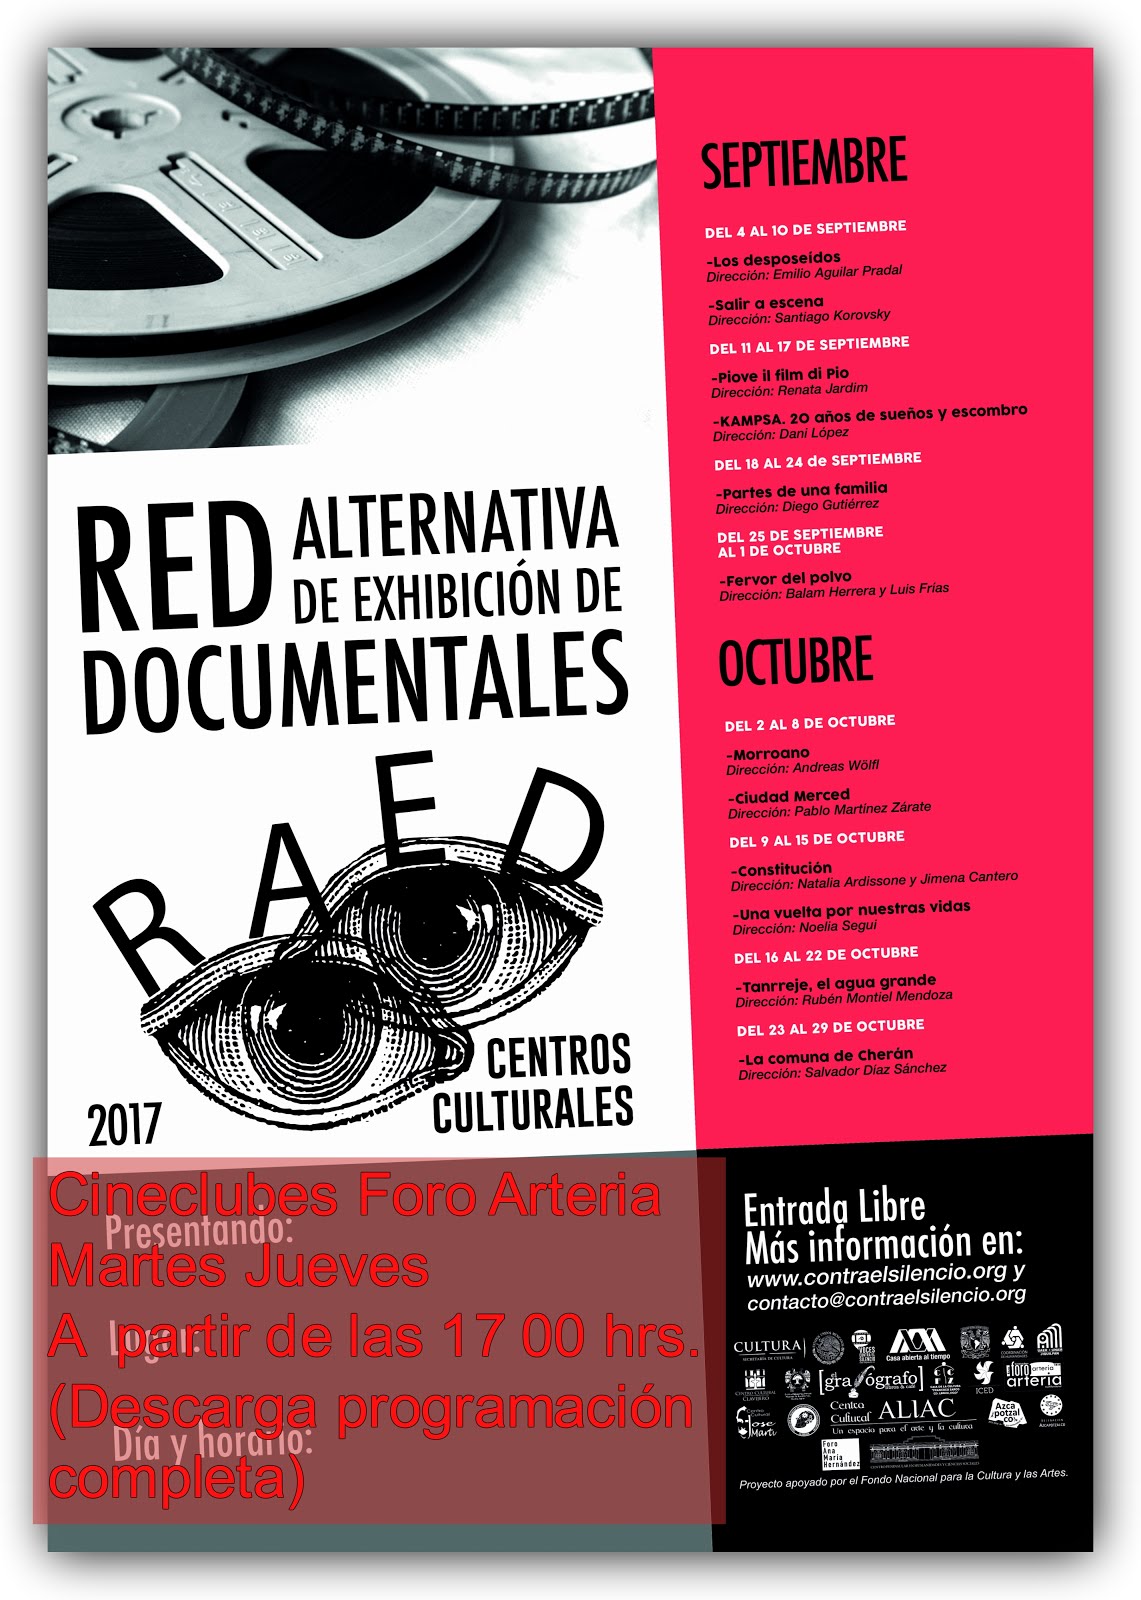 RAED Red Alternativa de Exhibición de Documentales Septiembre /Octubre